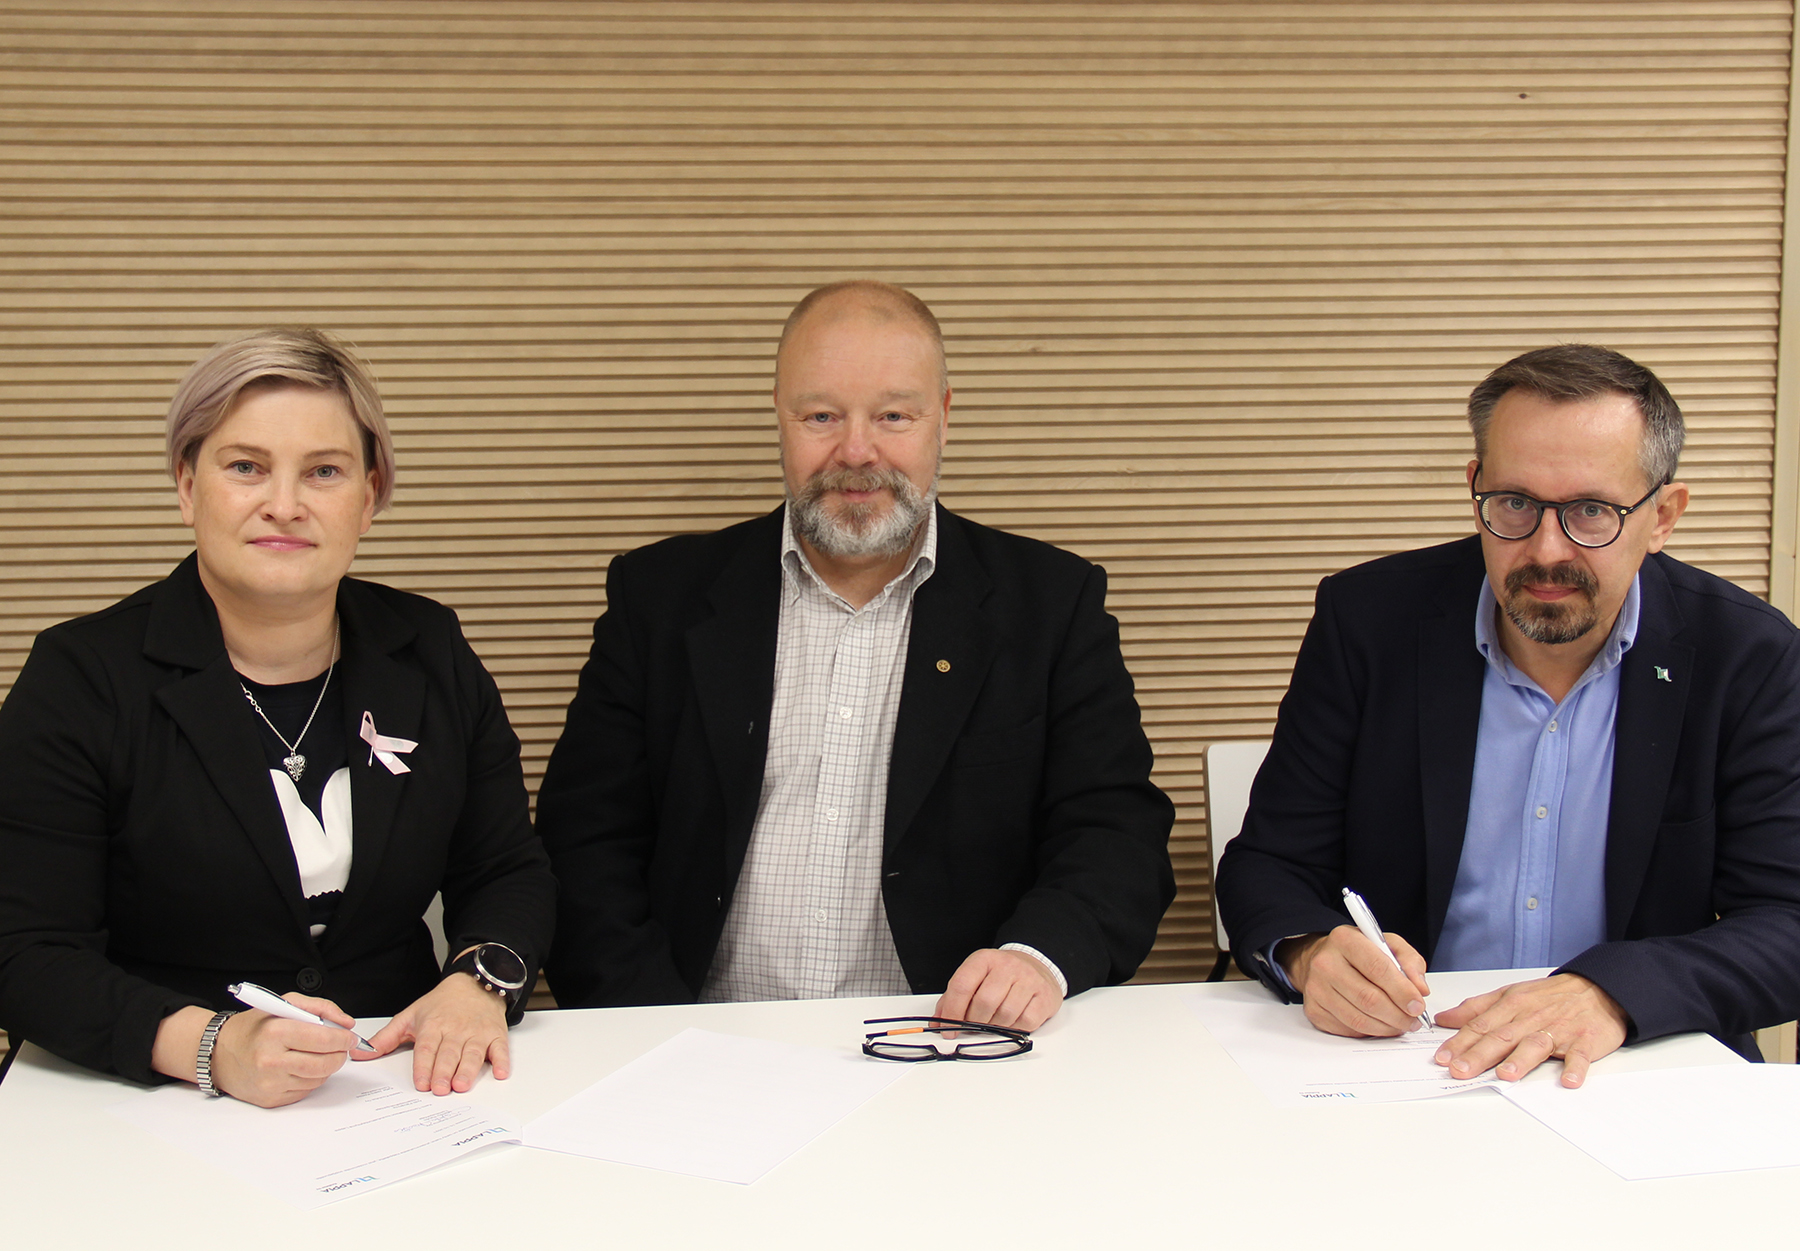 Kuvassa henkilöt Katja Jaako-Körkkö, Markku Rautio ja Antti Päivärinta pöydän ääressä allekirjoittamassa sopimusta